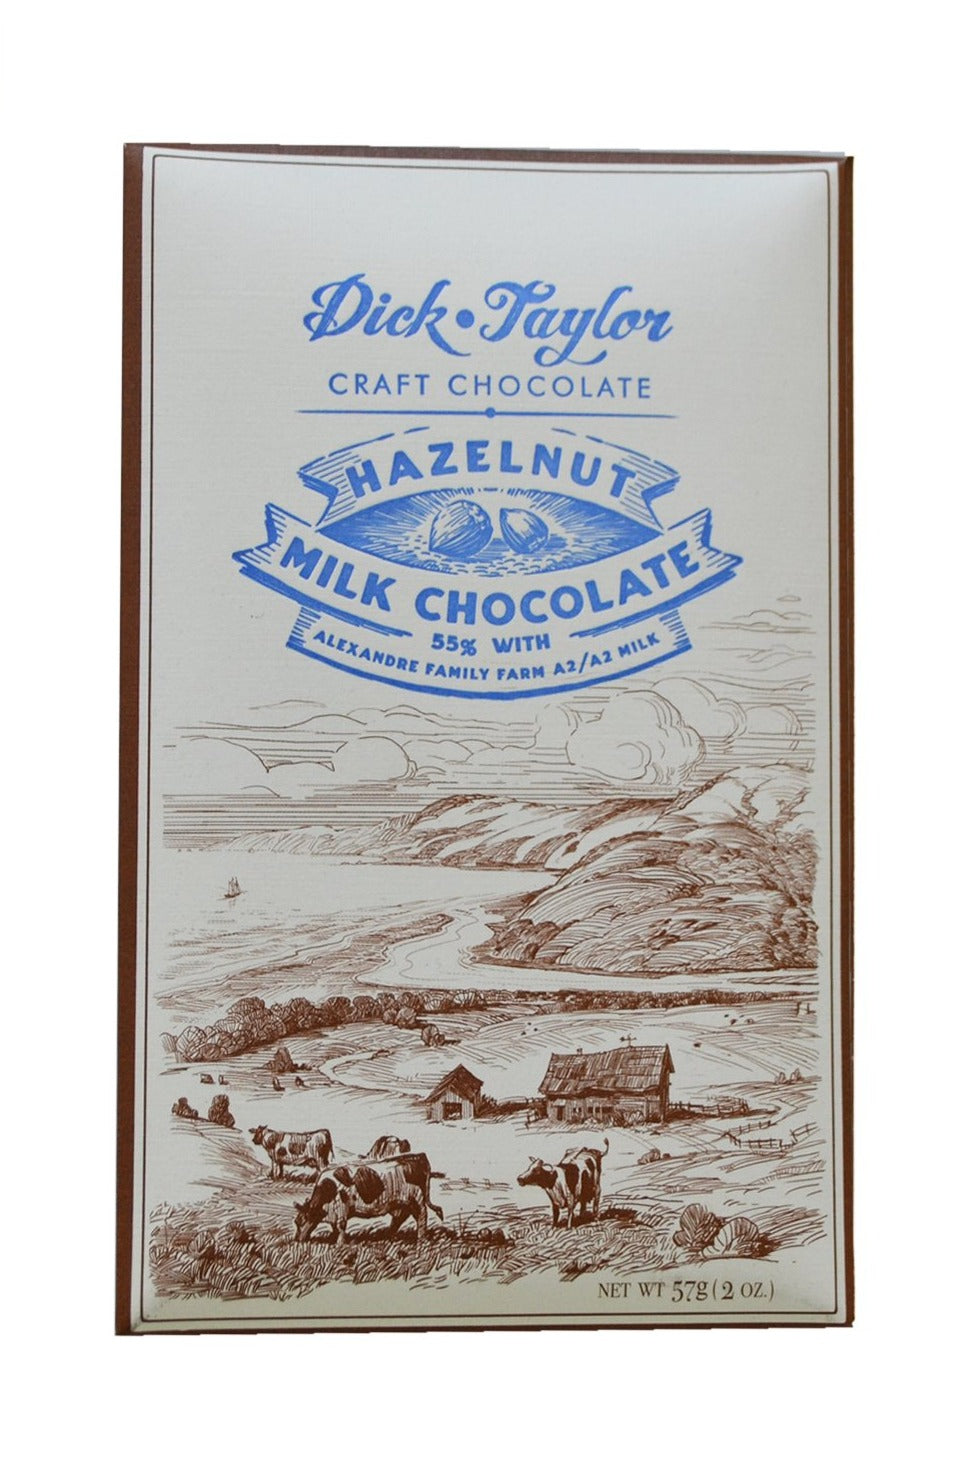 hazelnut milk chocolate